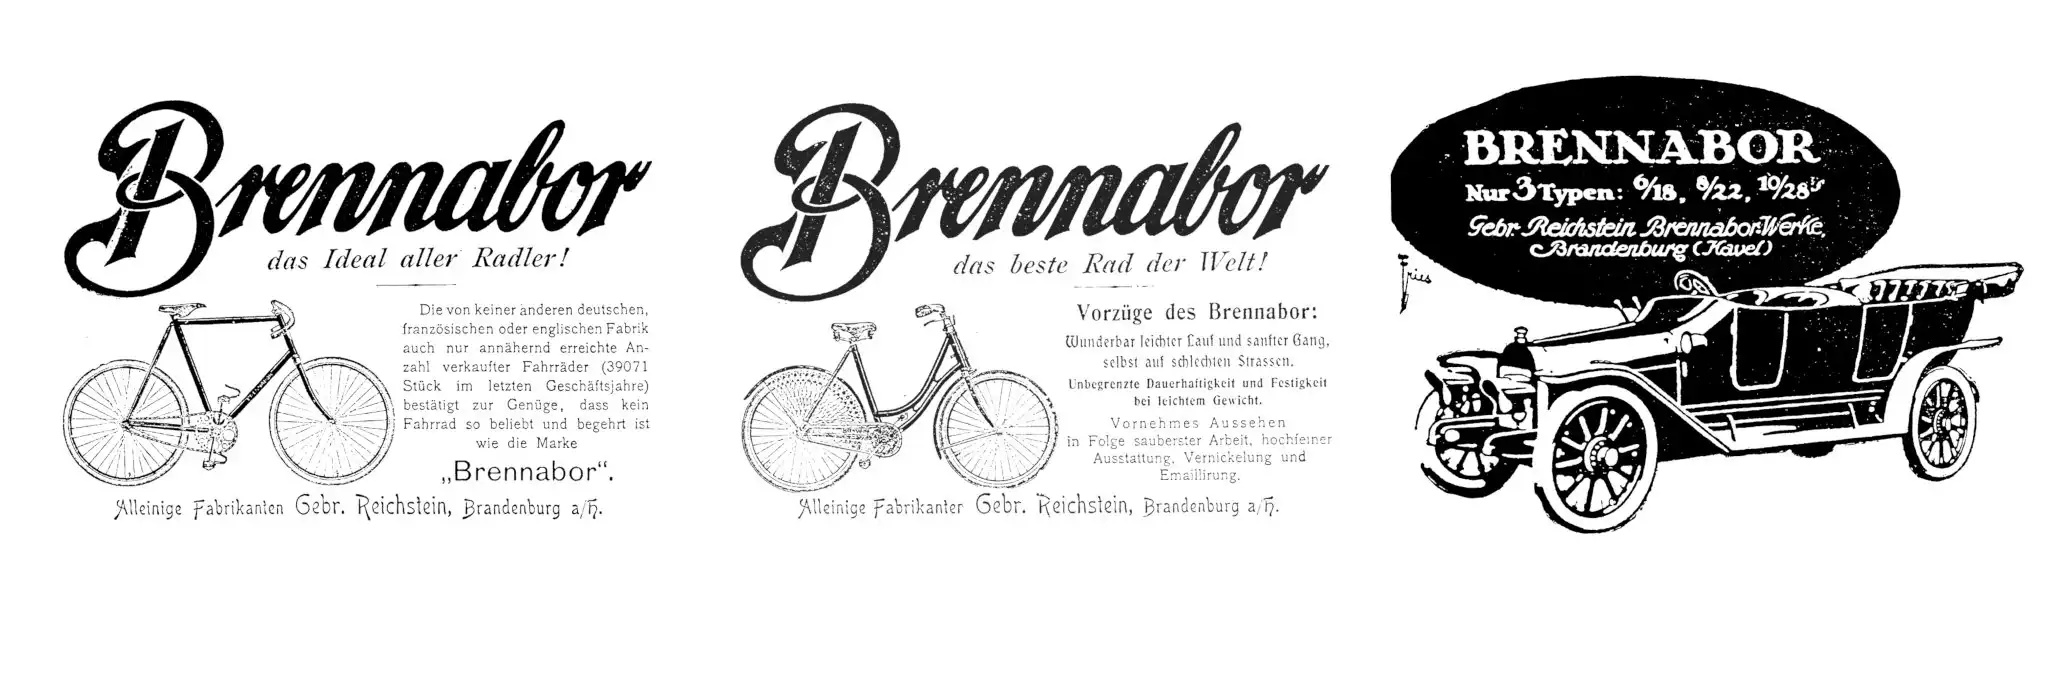 Brennabor-Fahrradwerke Brandenburg, um 1900; Brennabor-Auto, 1913